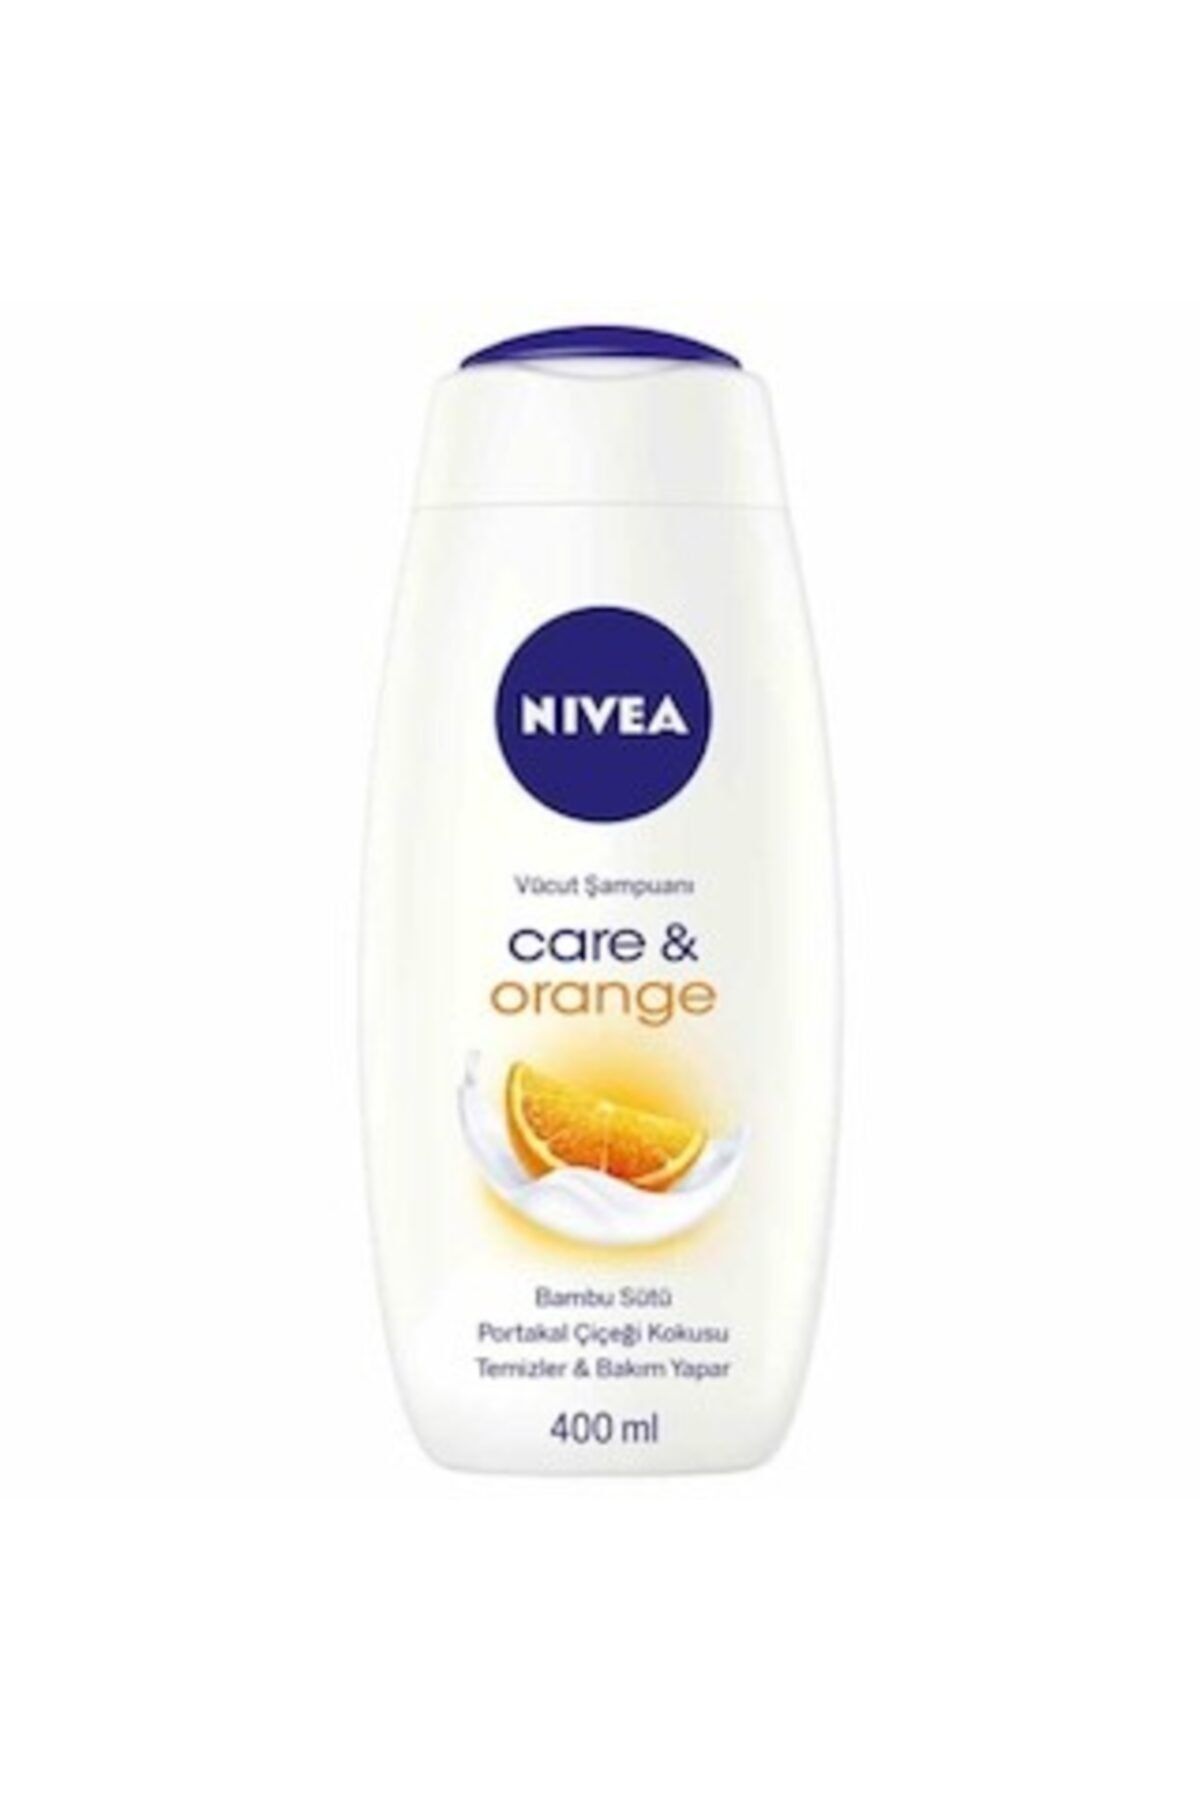 NIVEA Care & Orange Vücut Şampuanı 400 ml